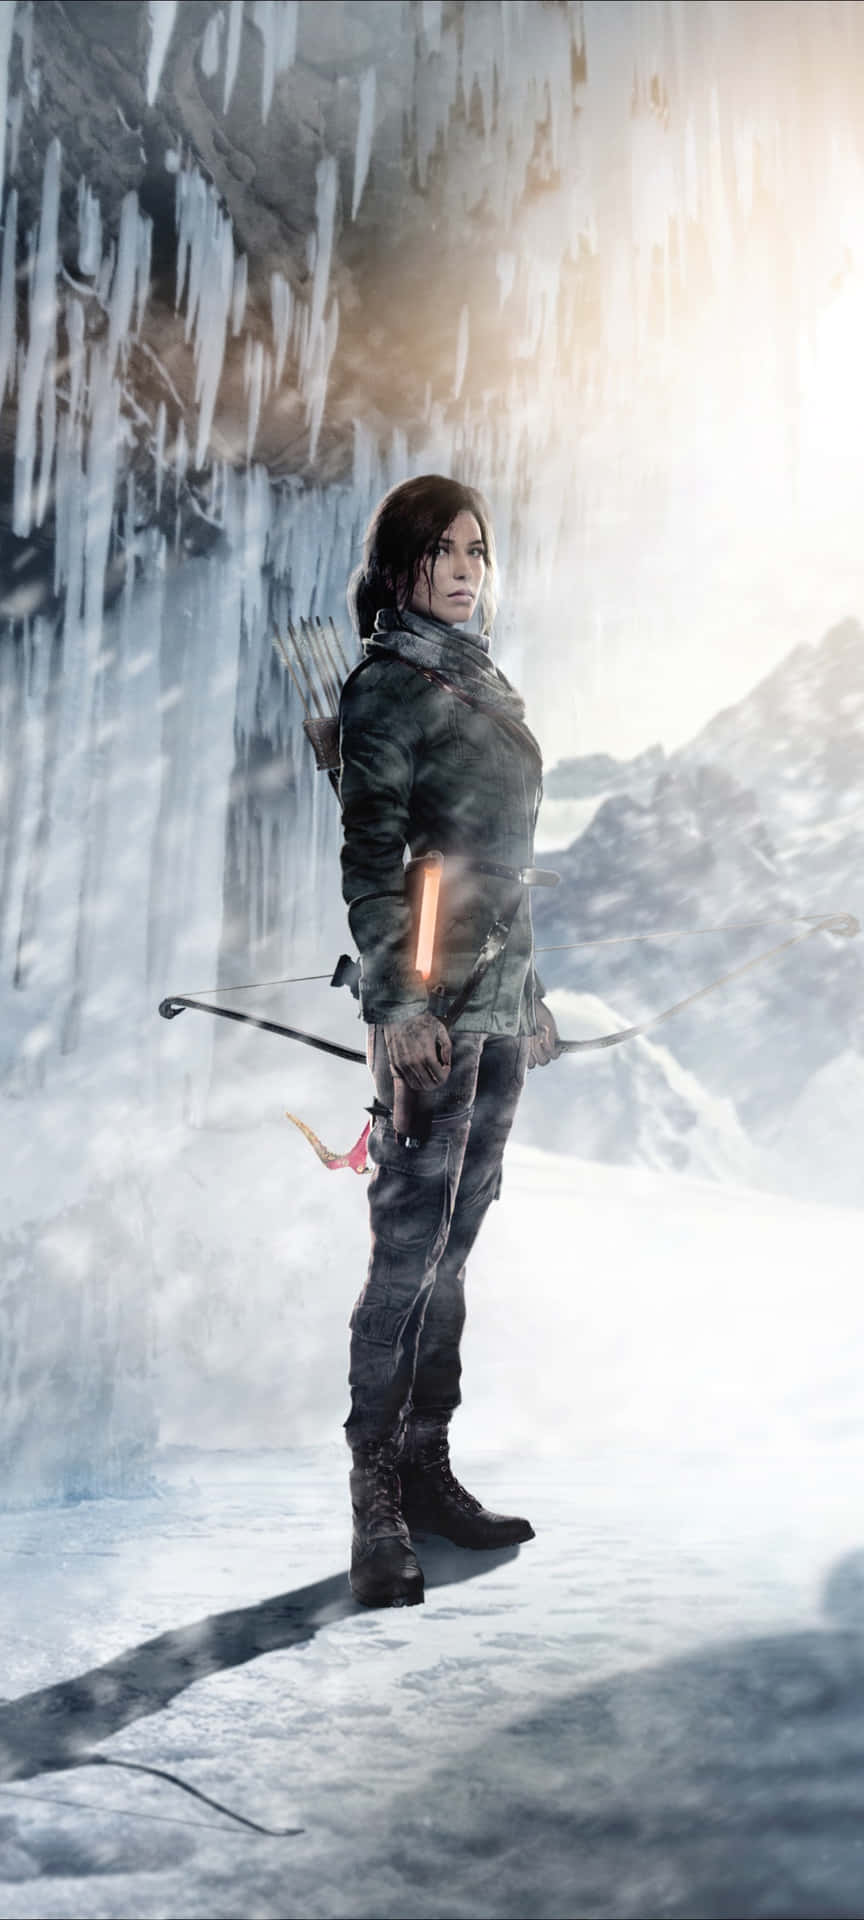 Tag på eventyr og vær modig som Lara Croft med Tomb Raider Iphone 5s. Wallpaper